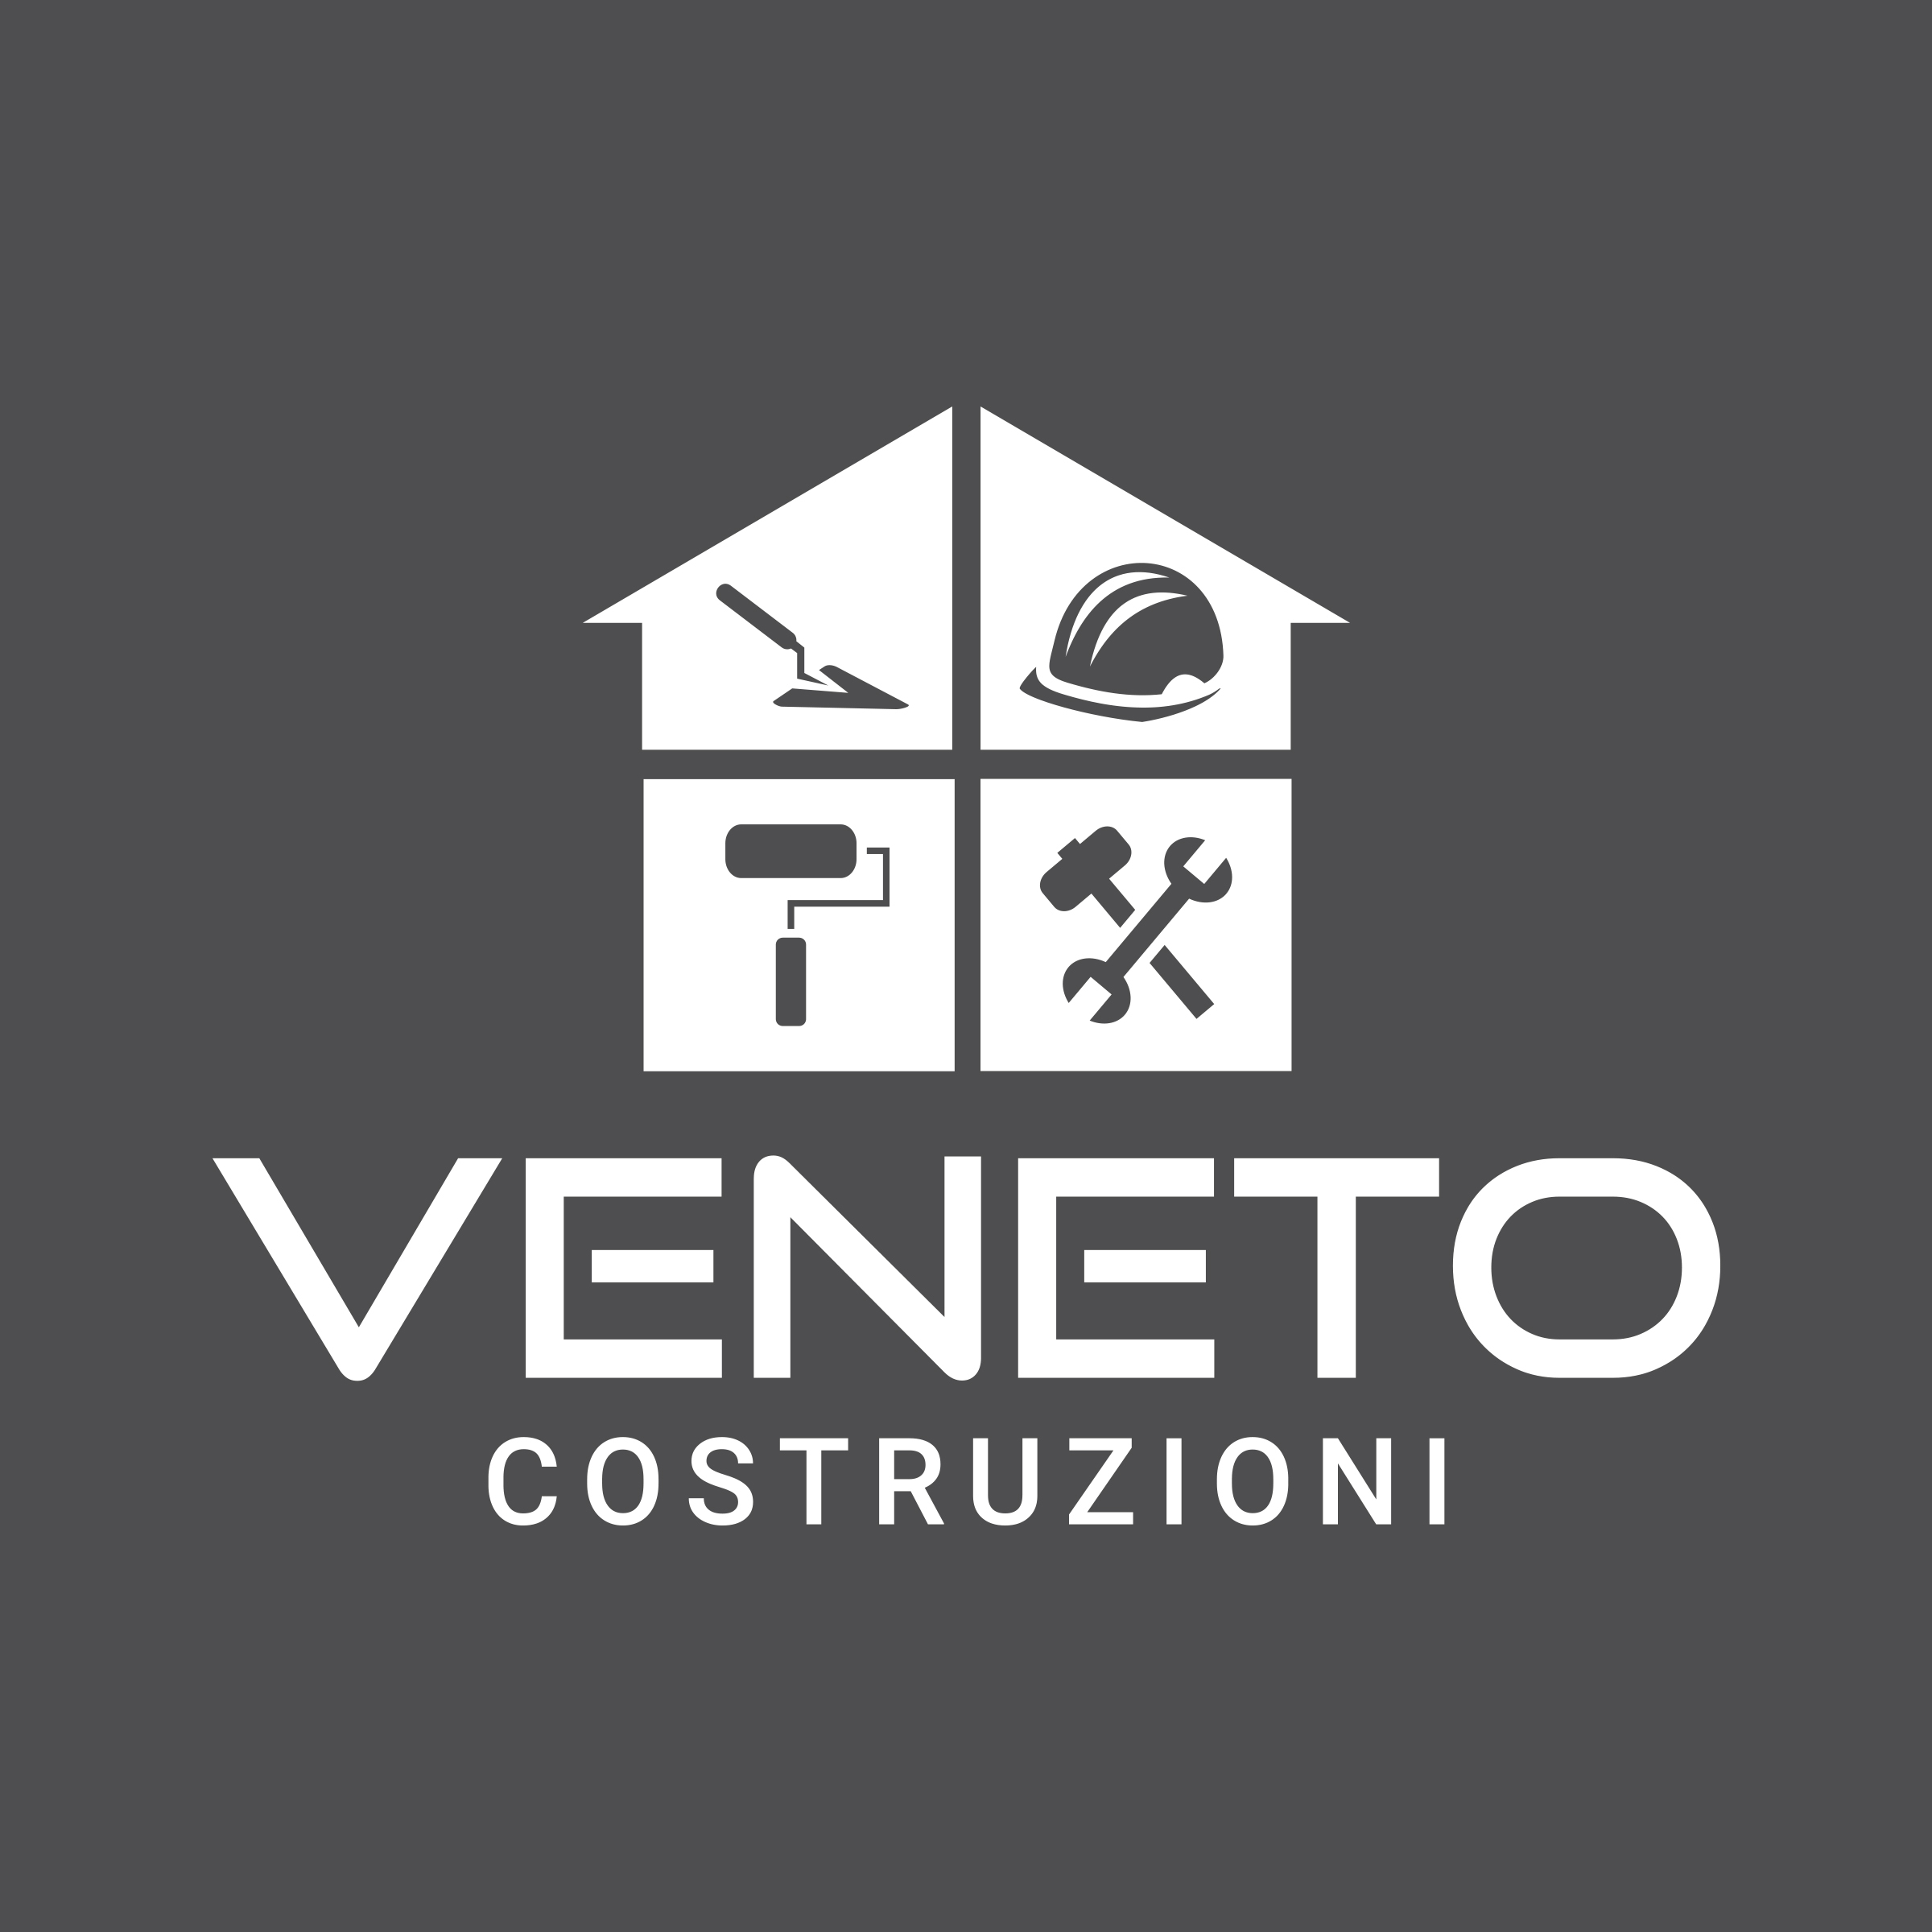 Veneto Costruzioni's logo